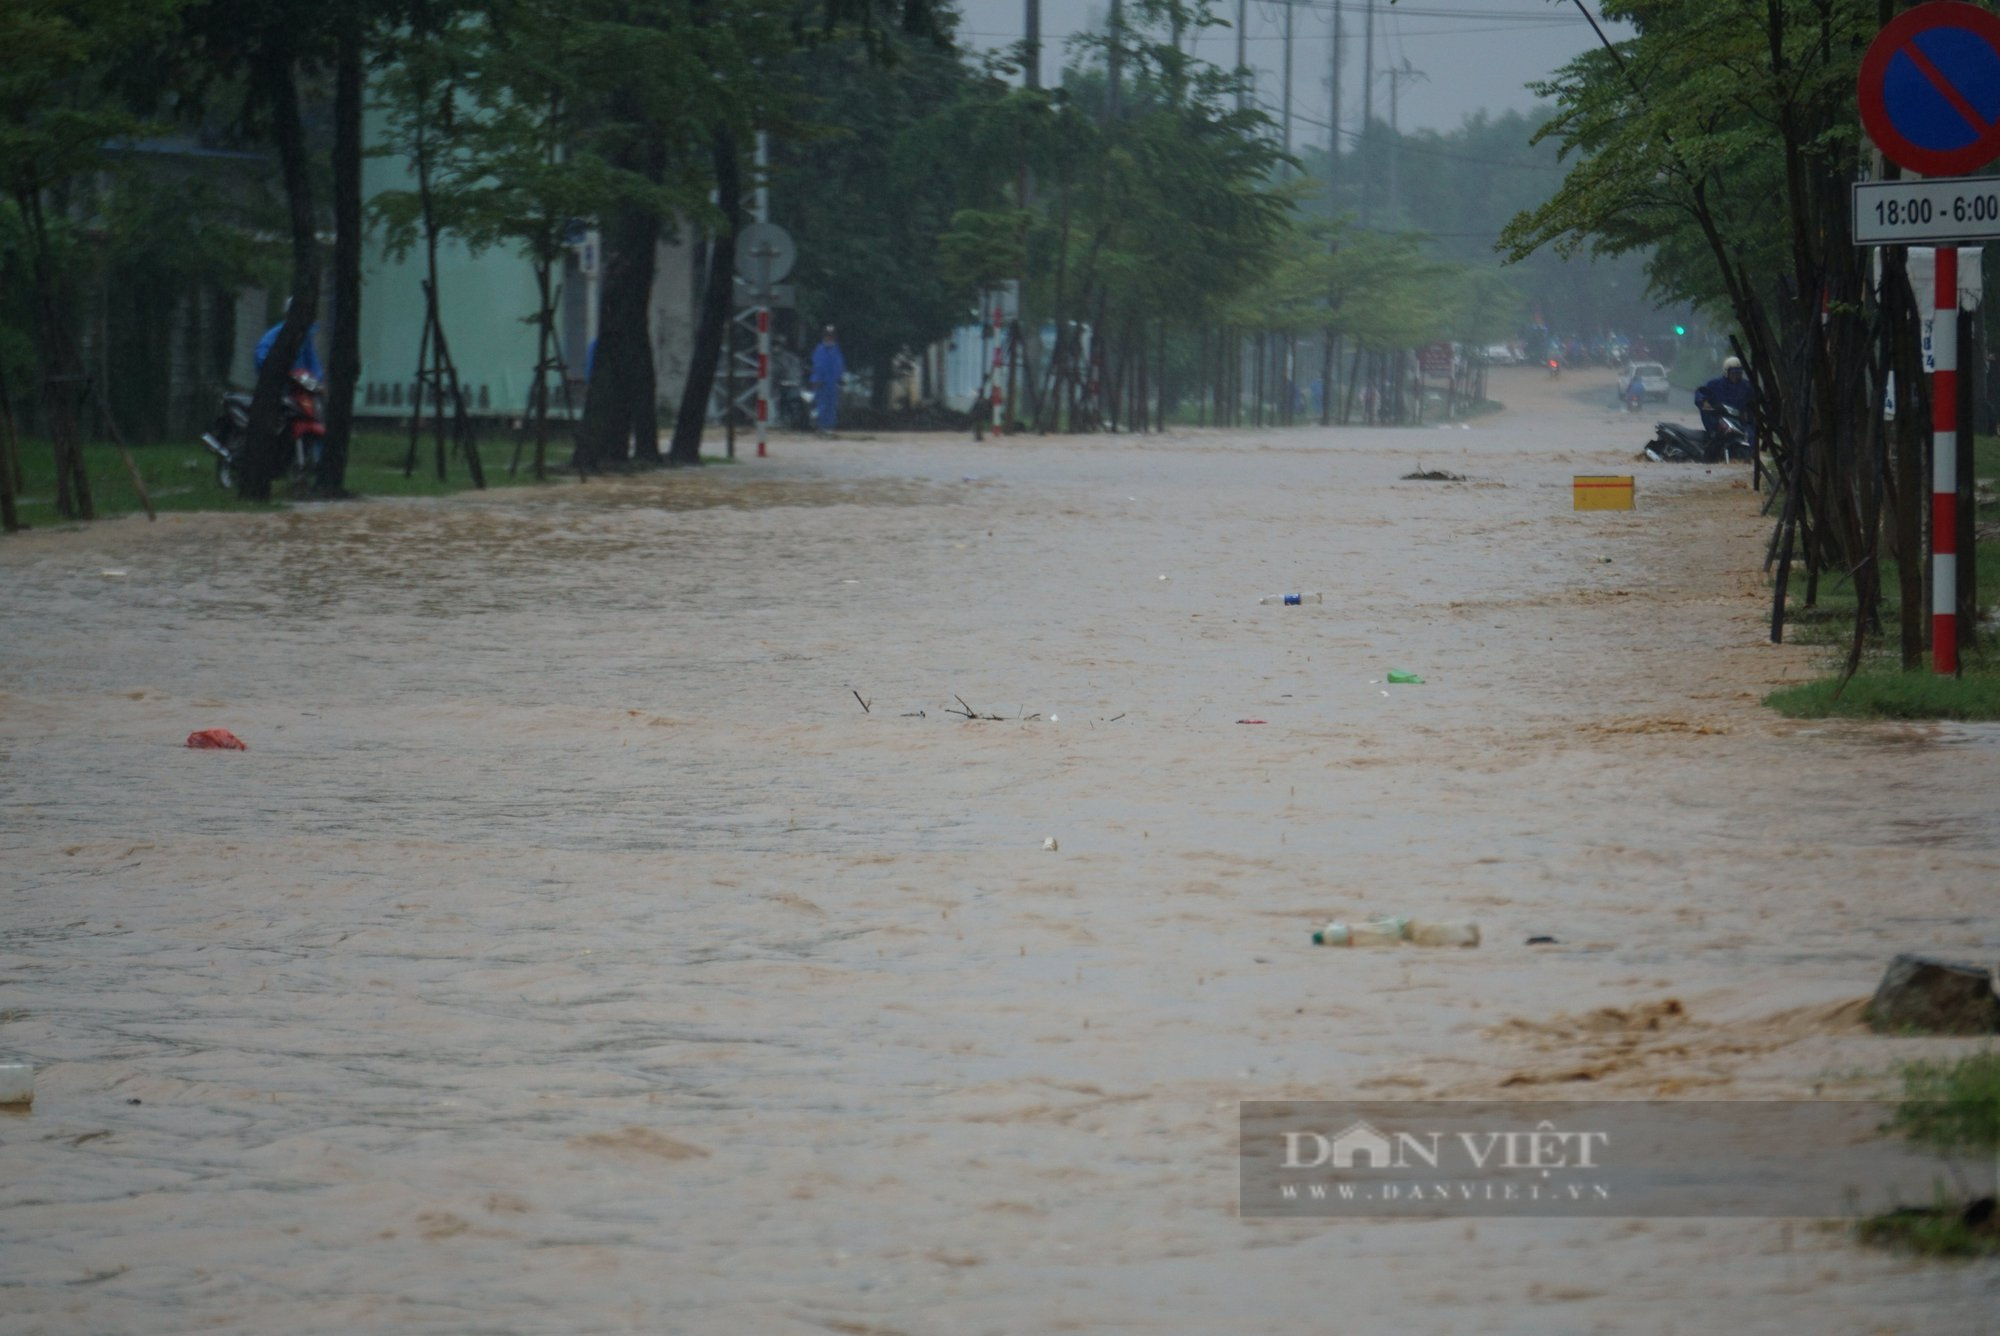 Chỉ hơn 1 tuần sau trận mưa lịch sử, Đà Nẵng lại ngập do mưa lớn - Ảnh 1.